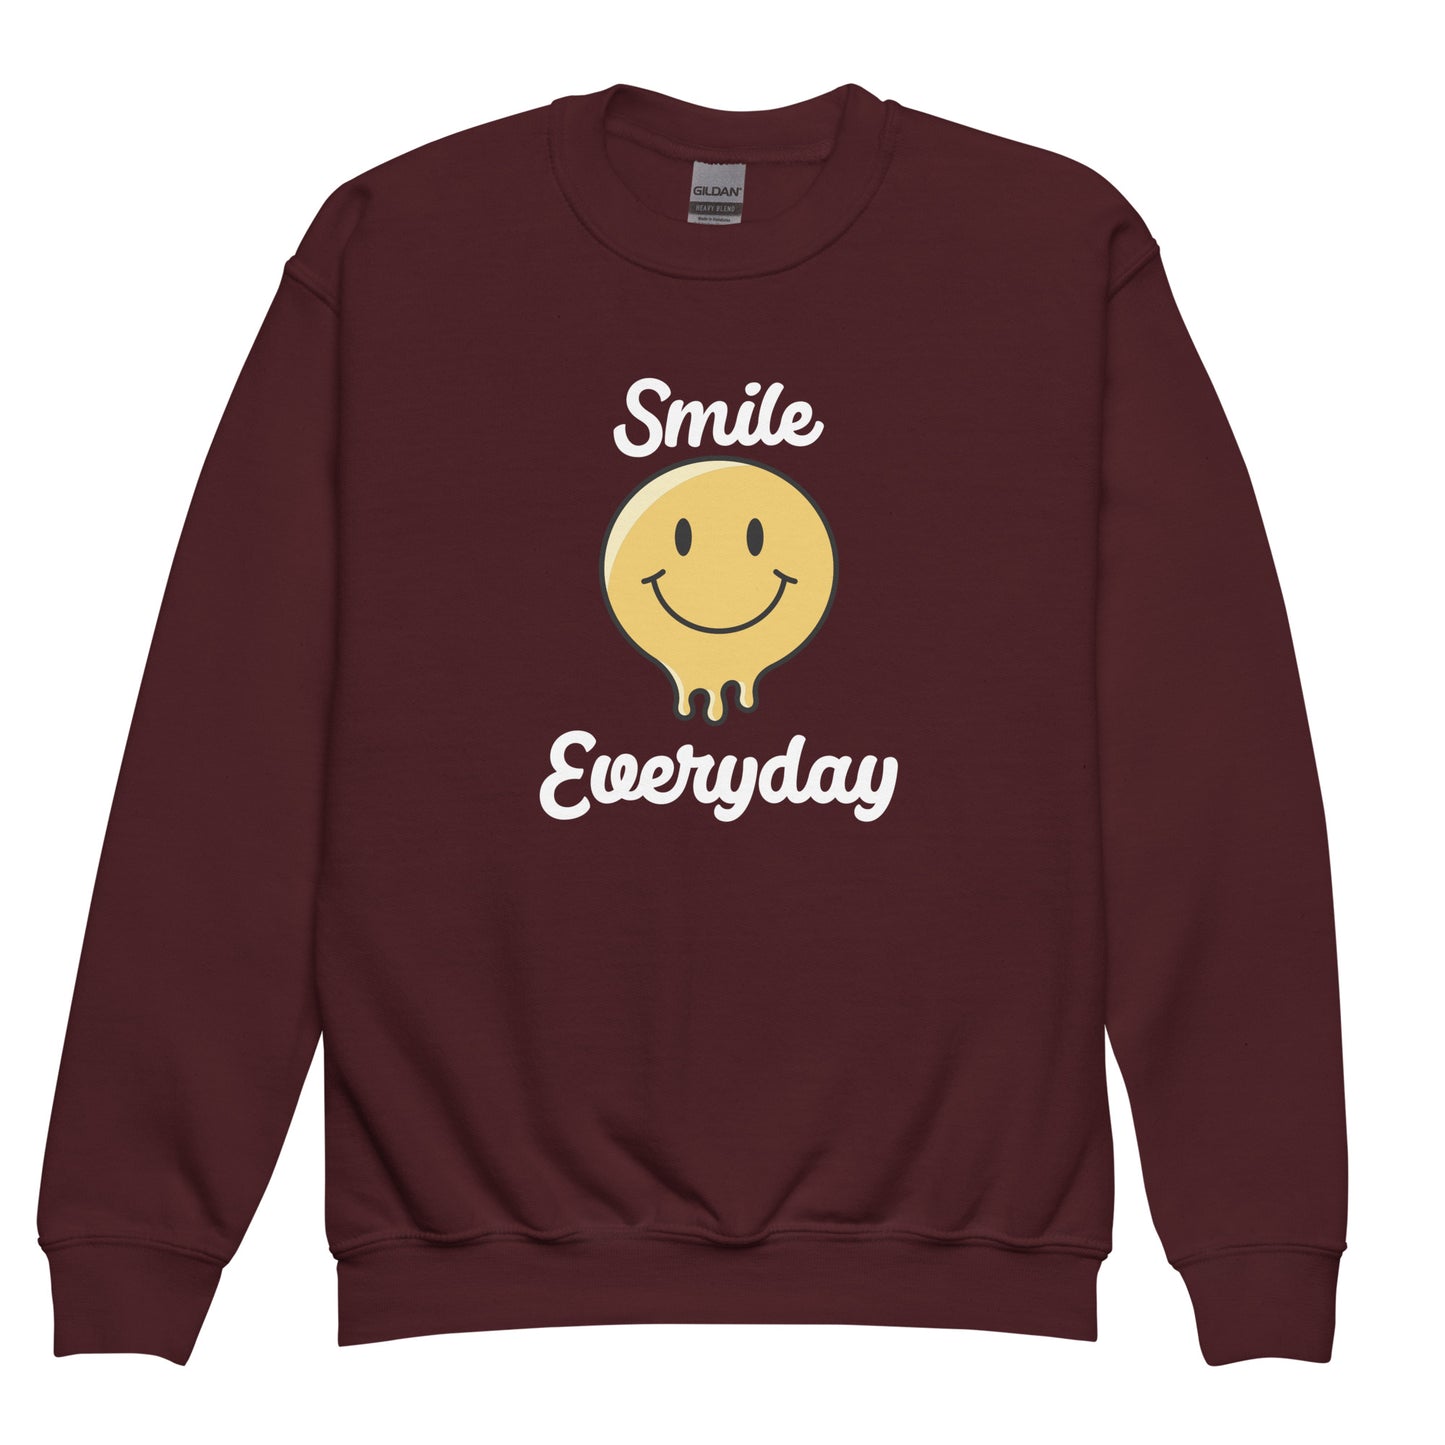 Smile Everyday Youth crewneck sweatshirt